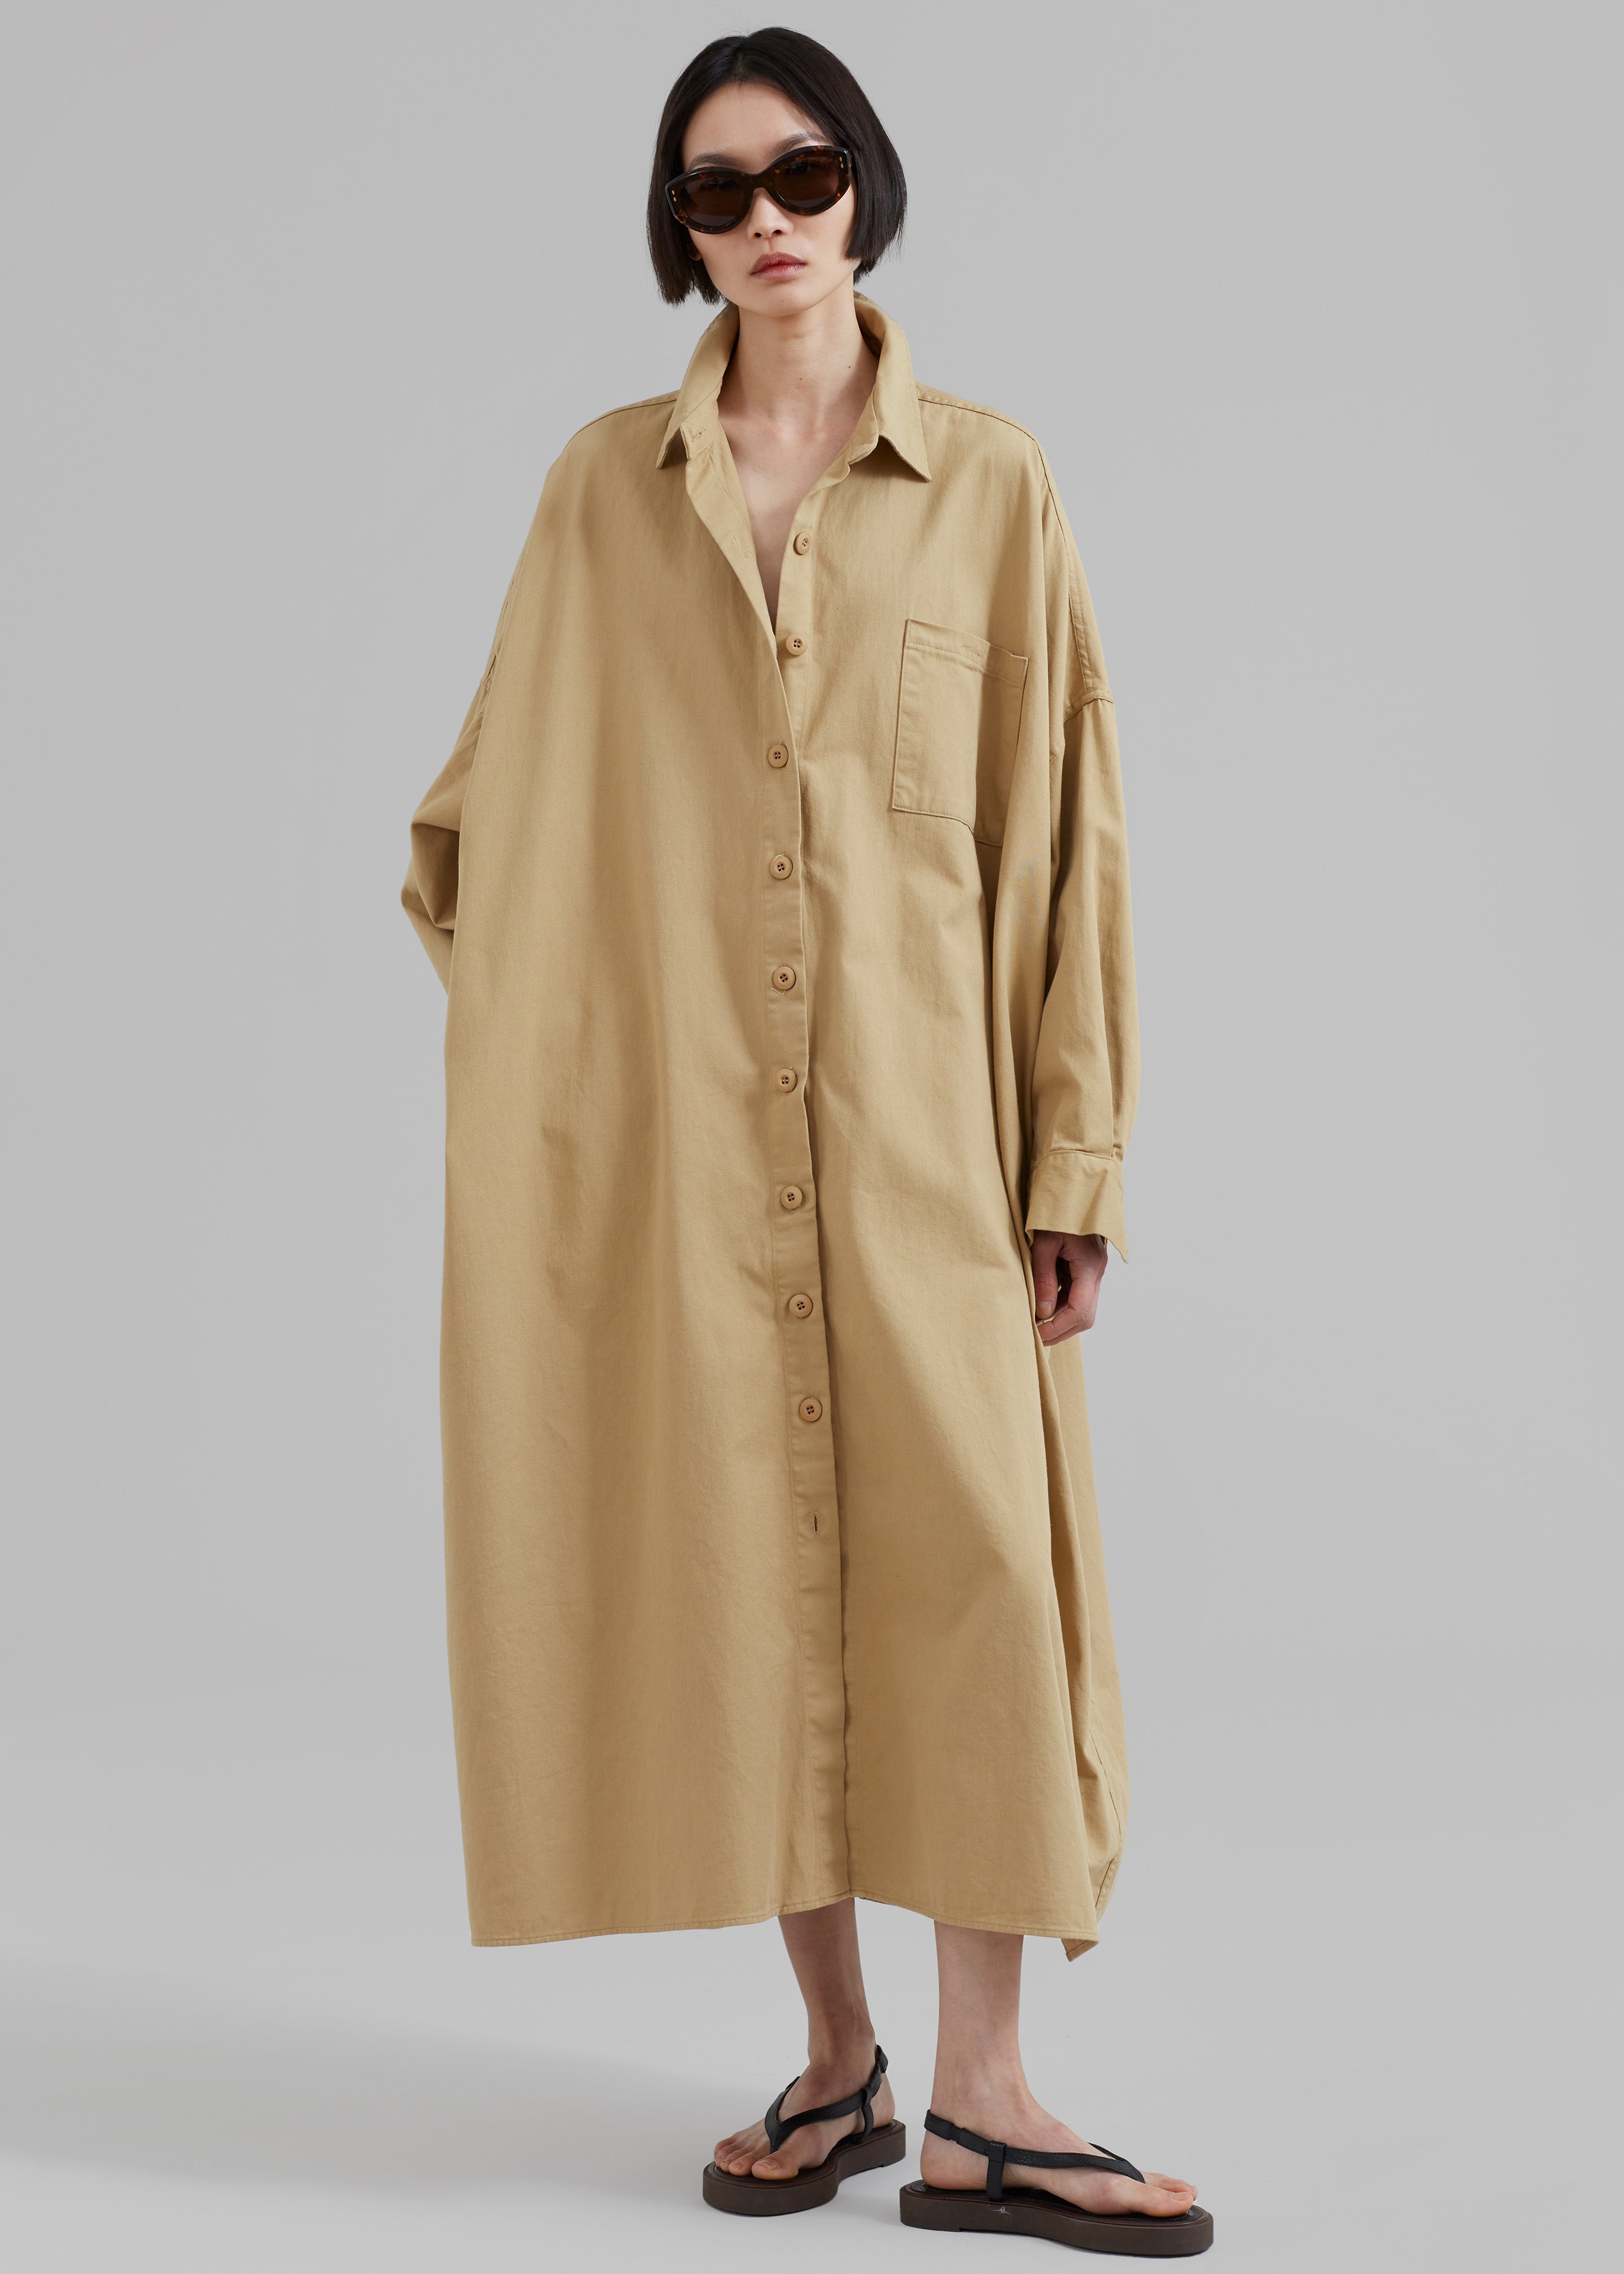 Kason Oversized Shirt Dress - Sahara – The Frankie Shop